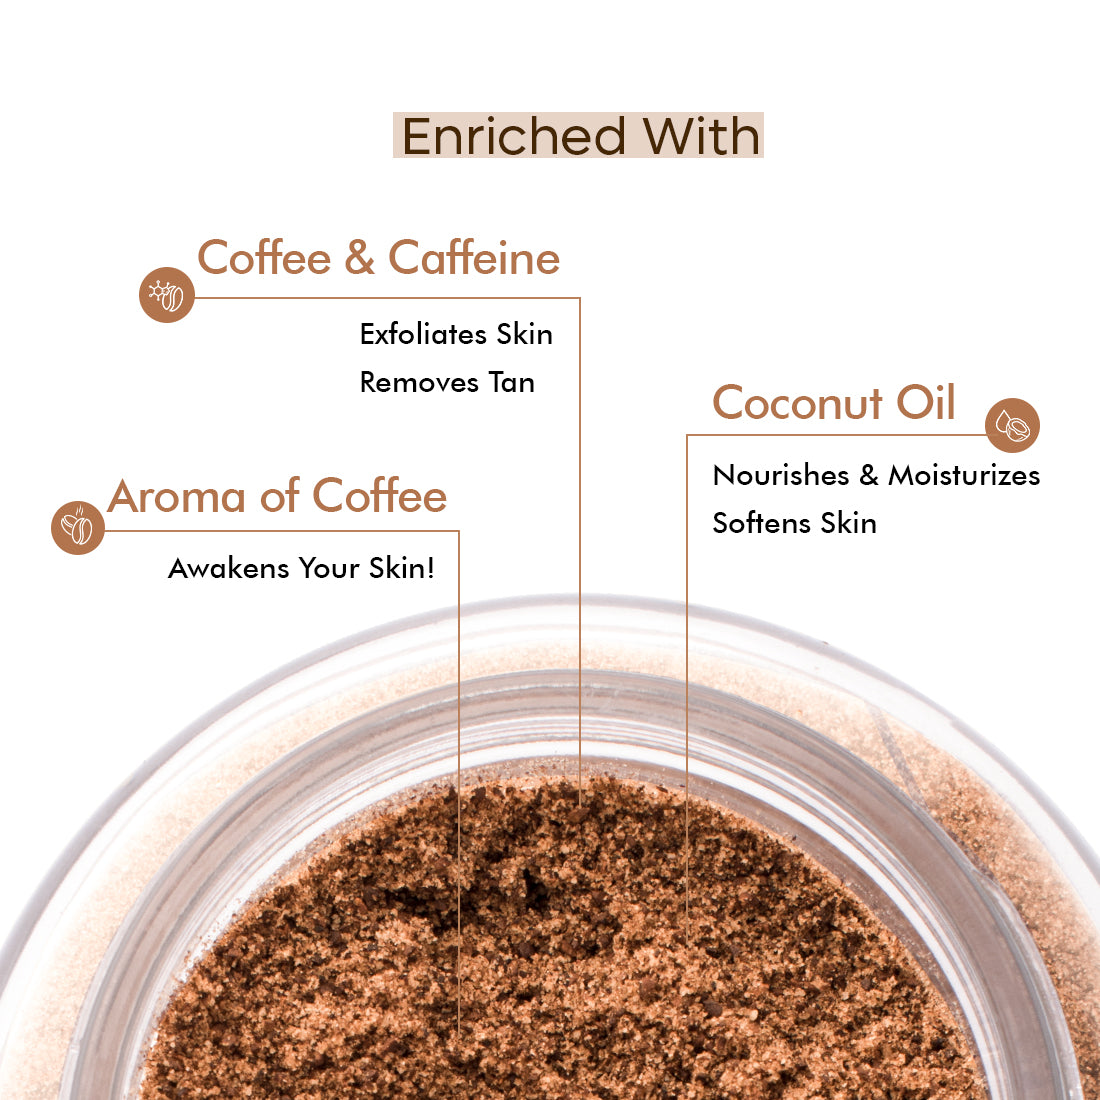 mCaffeine Naked & Raw Coffee Body Scrub (55gm)